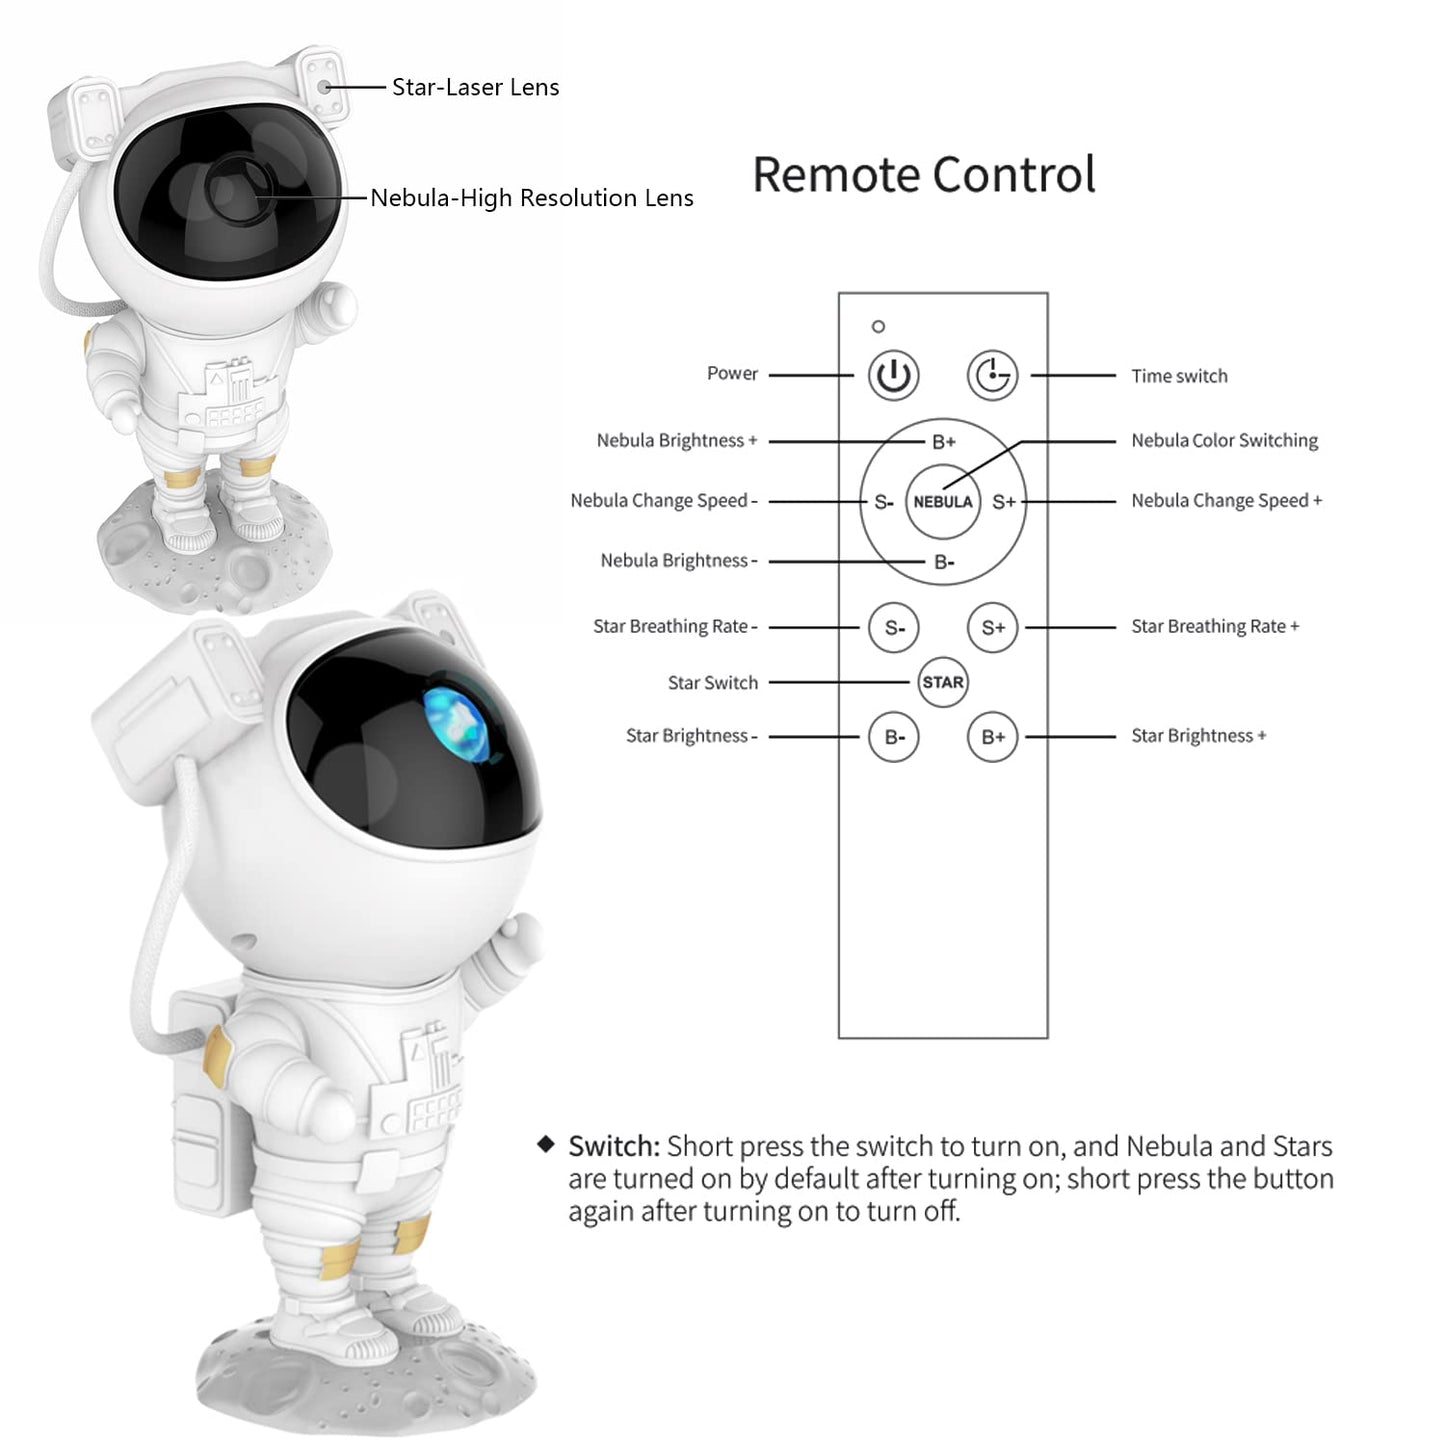 Astronaut Projector™  - Sterren astronaut projector